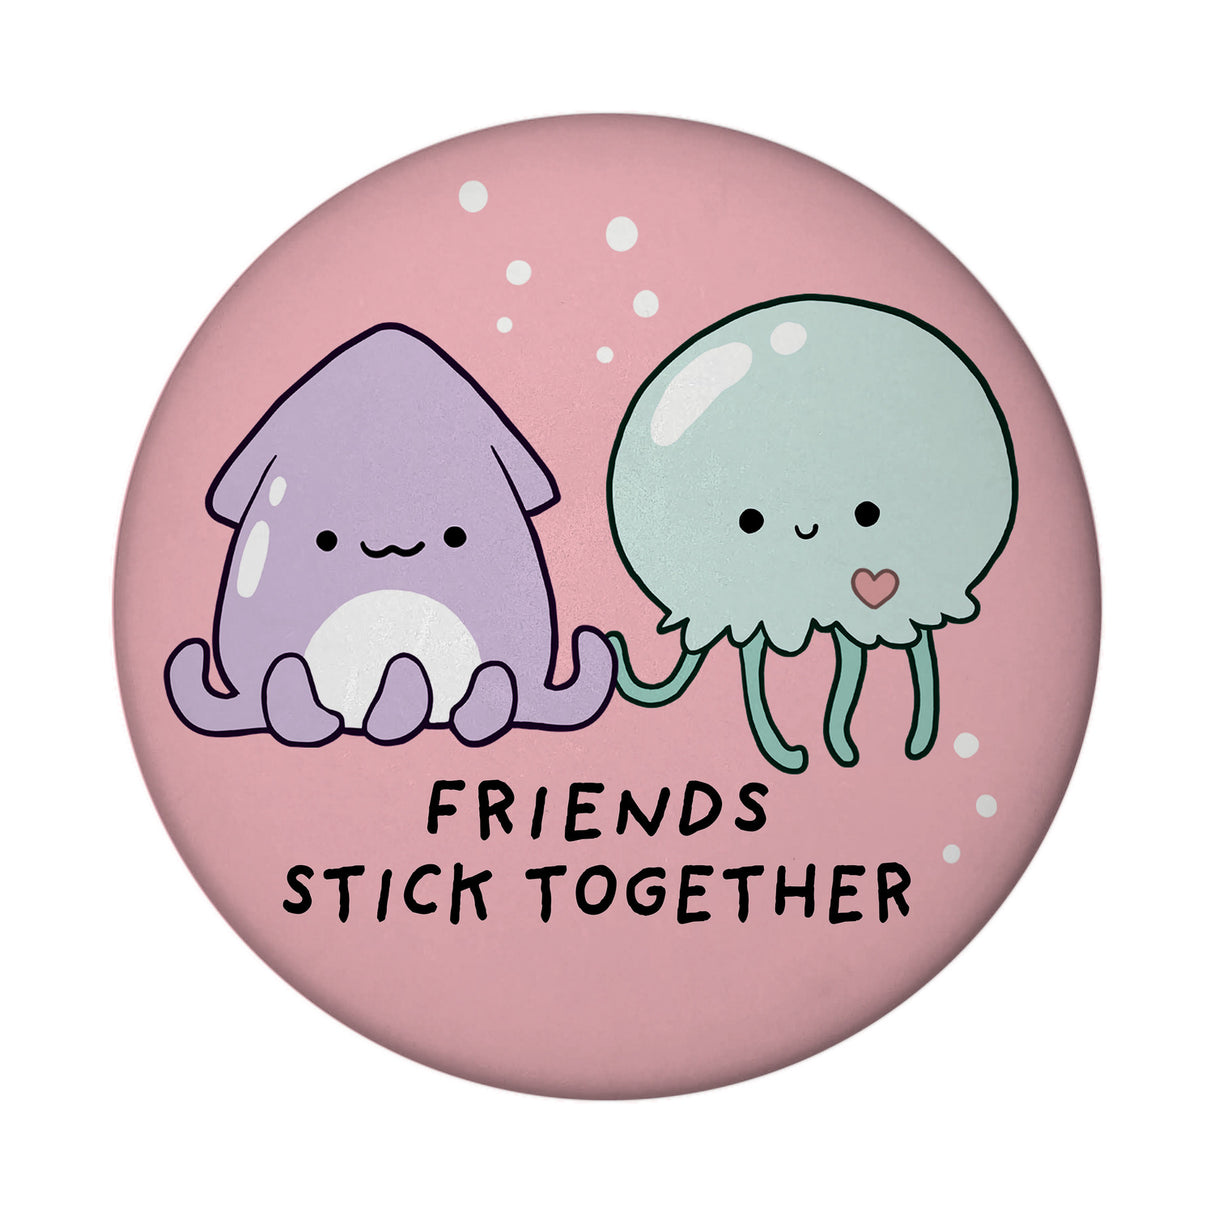 Jelly & Friends Qualle und Tintenfisch Magnet rund mit Spruch Friends stick together